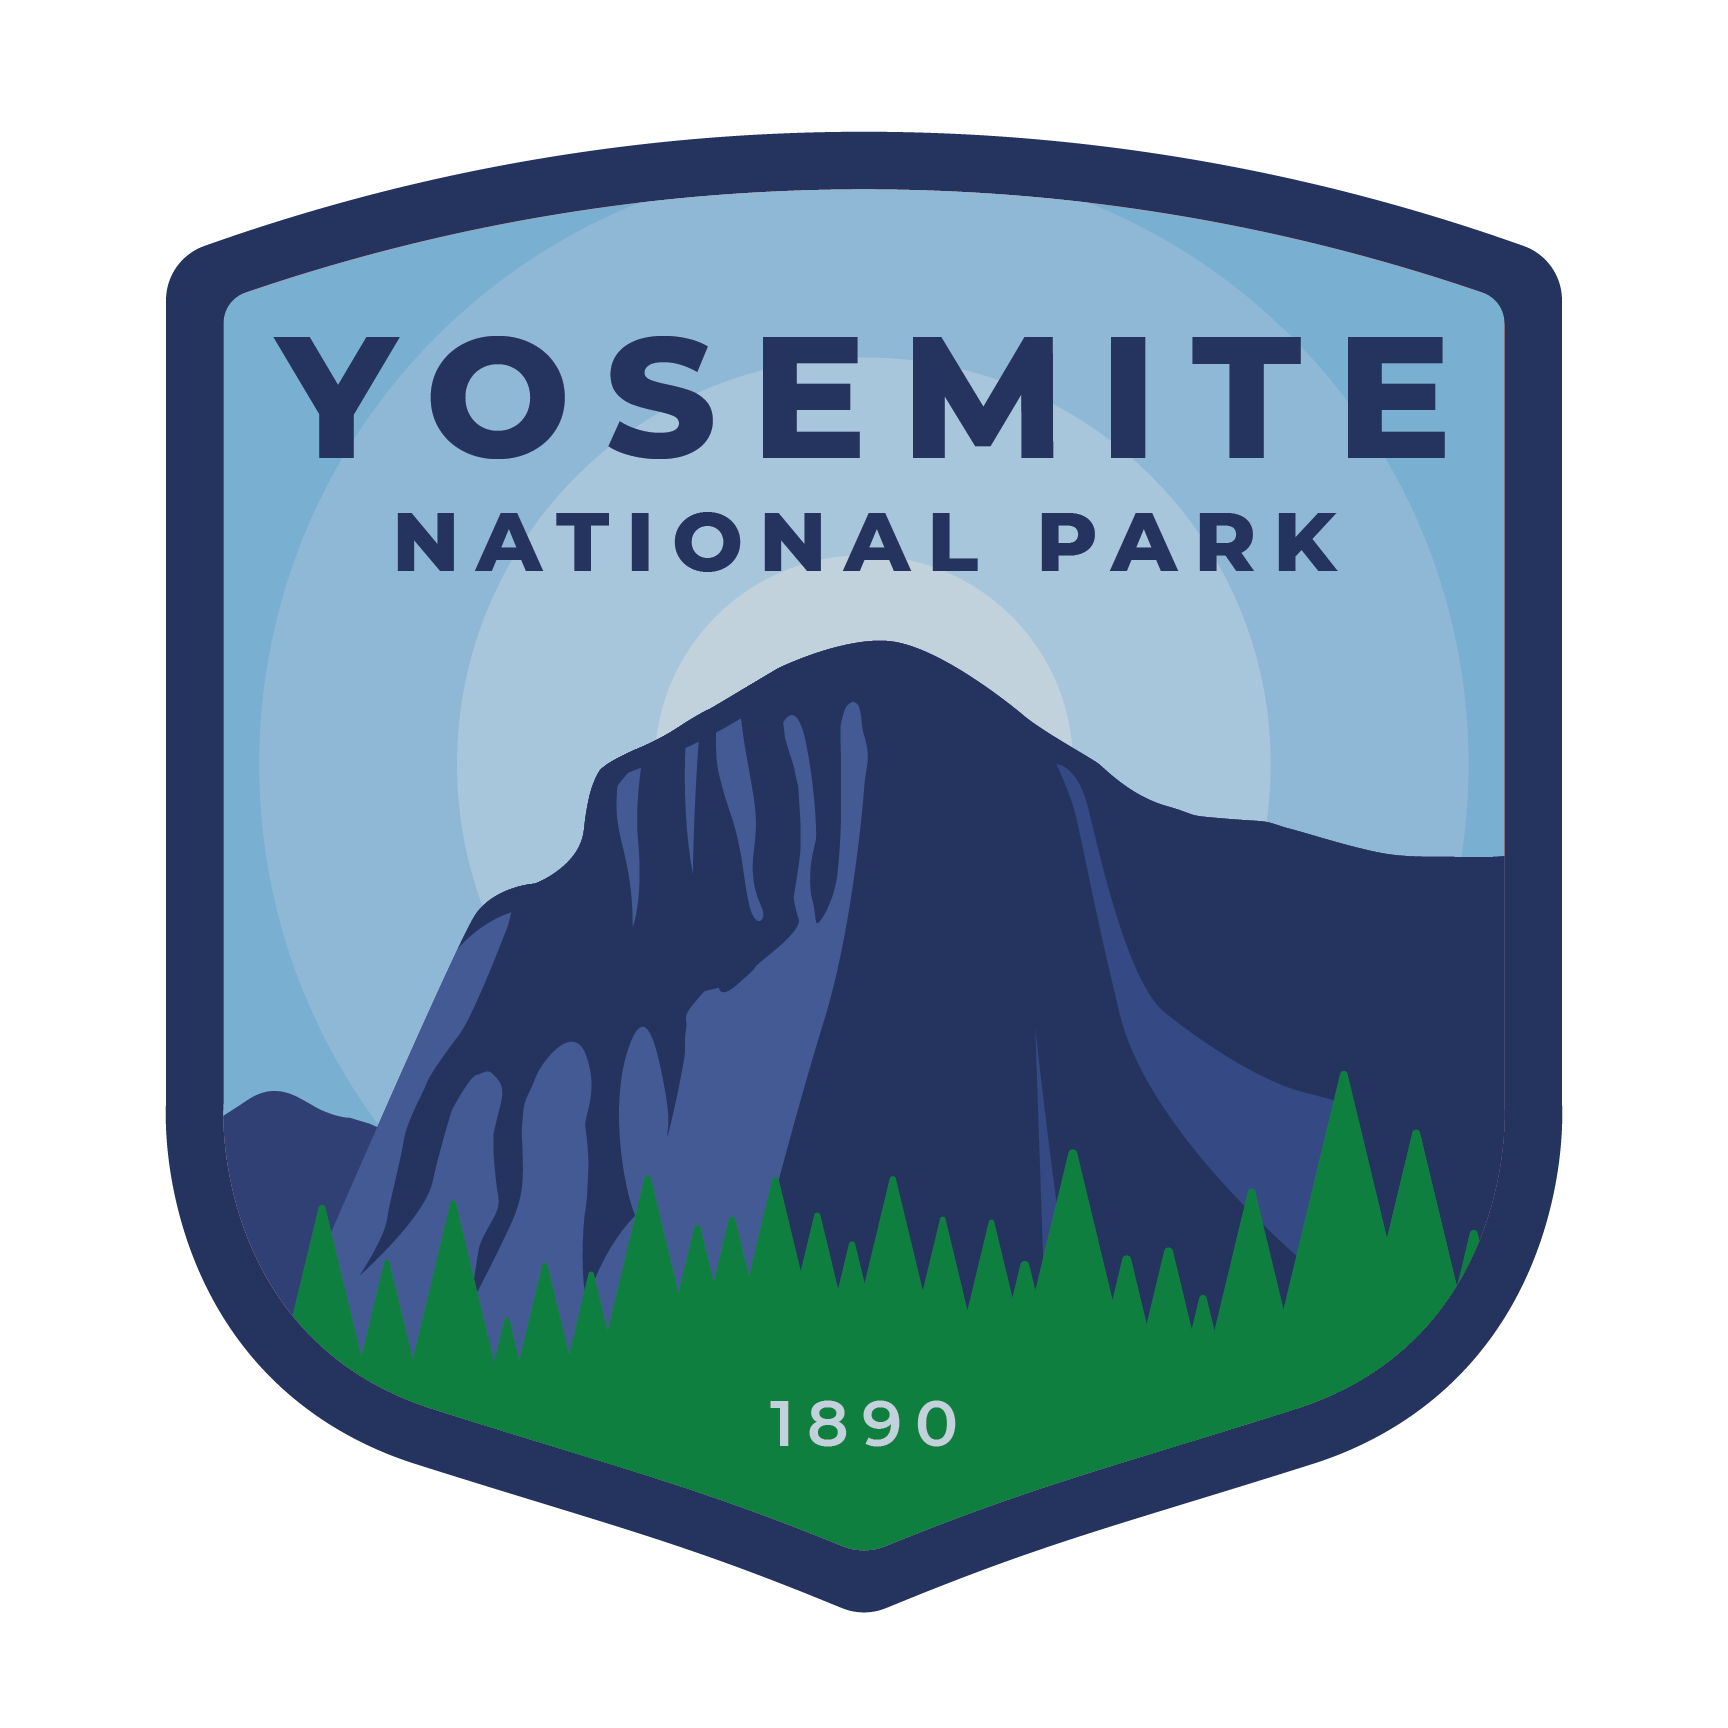 Yosemite_2x_c9f2797b-c340-4b54-9724-5732a4ed99be_1024x1024@2x.png